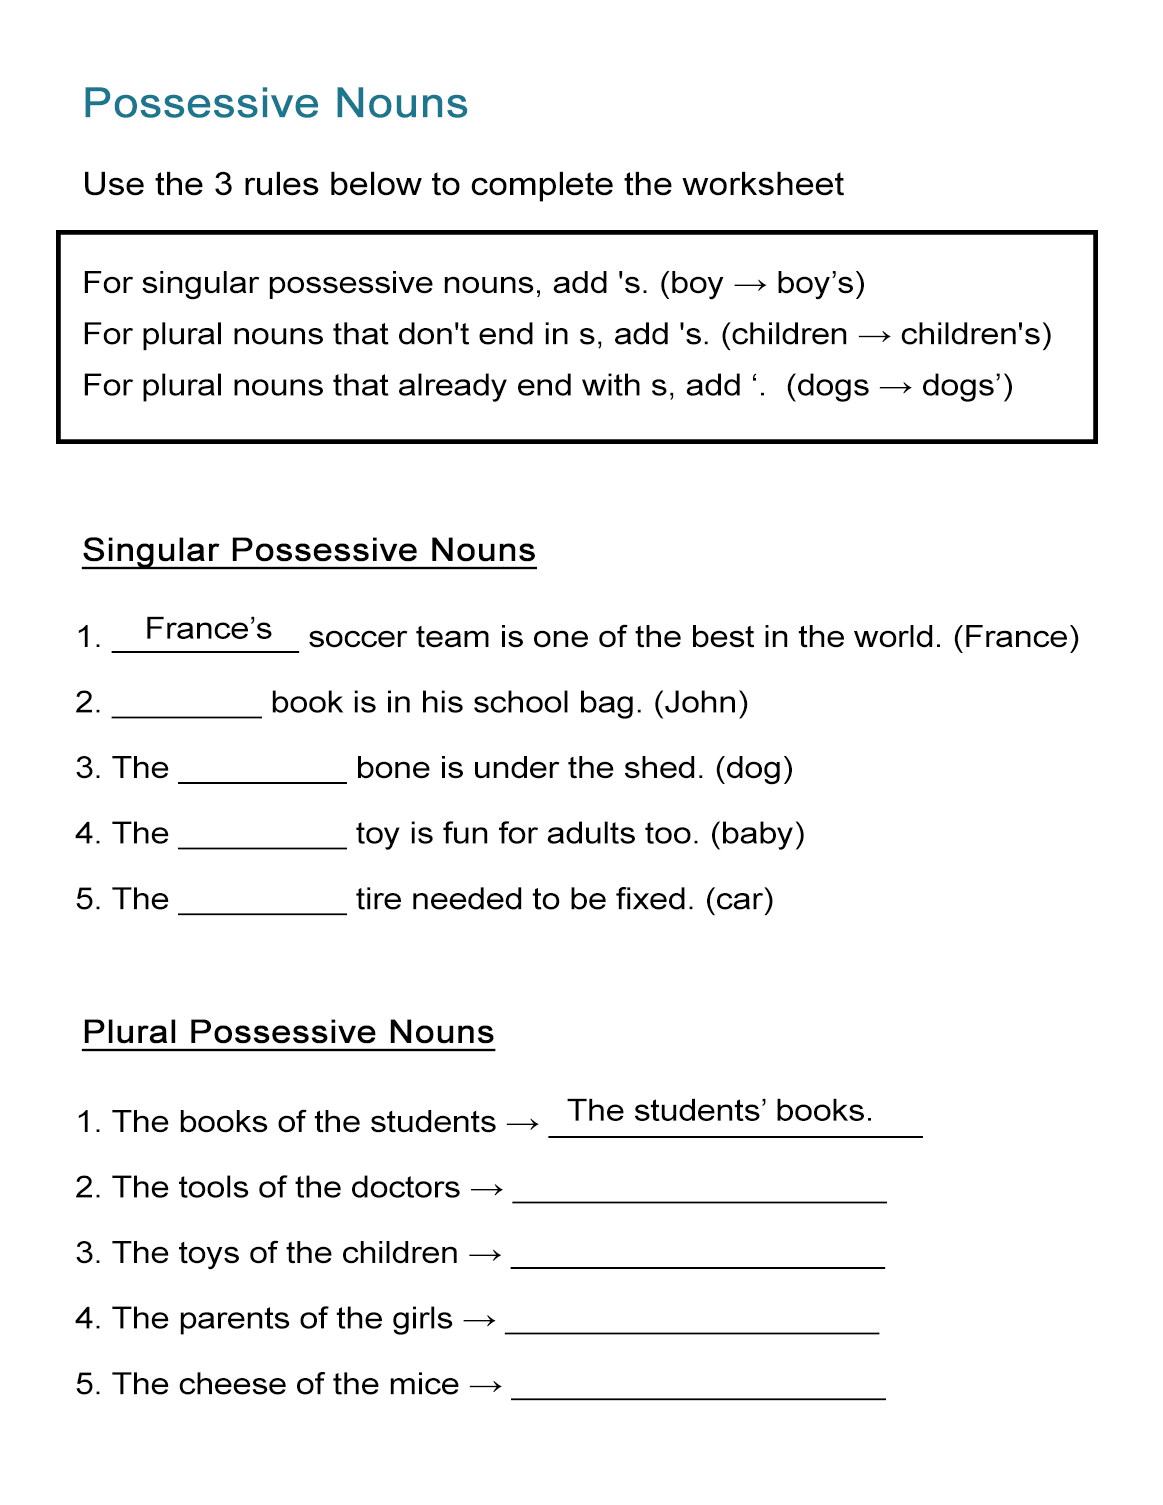 Possessive Nouns Worksheet: Singular and Plural Nouns - ALL ESL Pertaining To Singular And Plural Nouns Worksheet